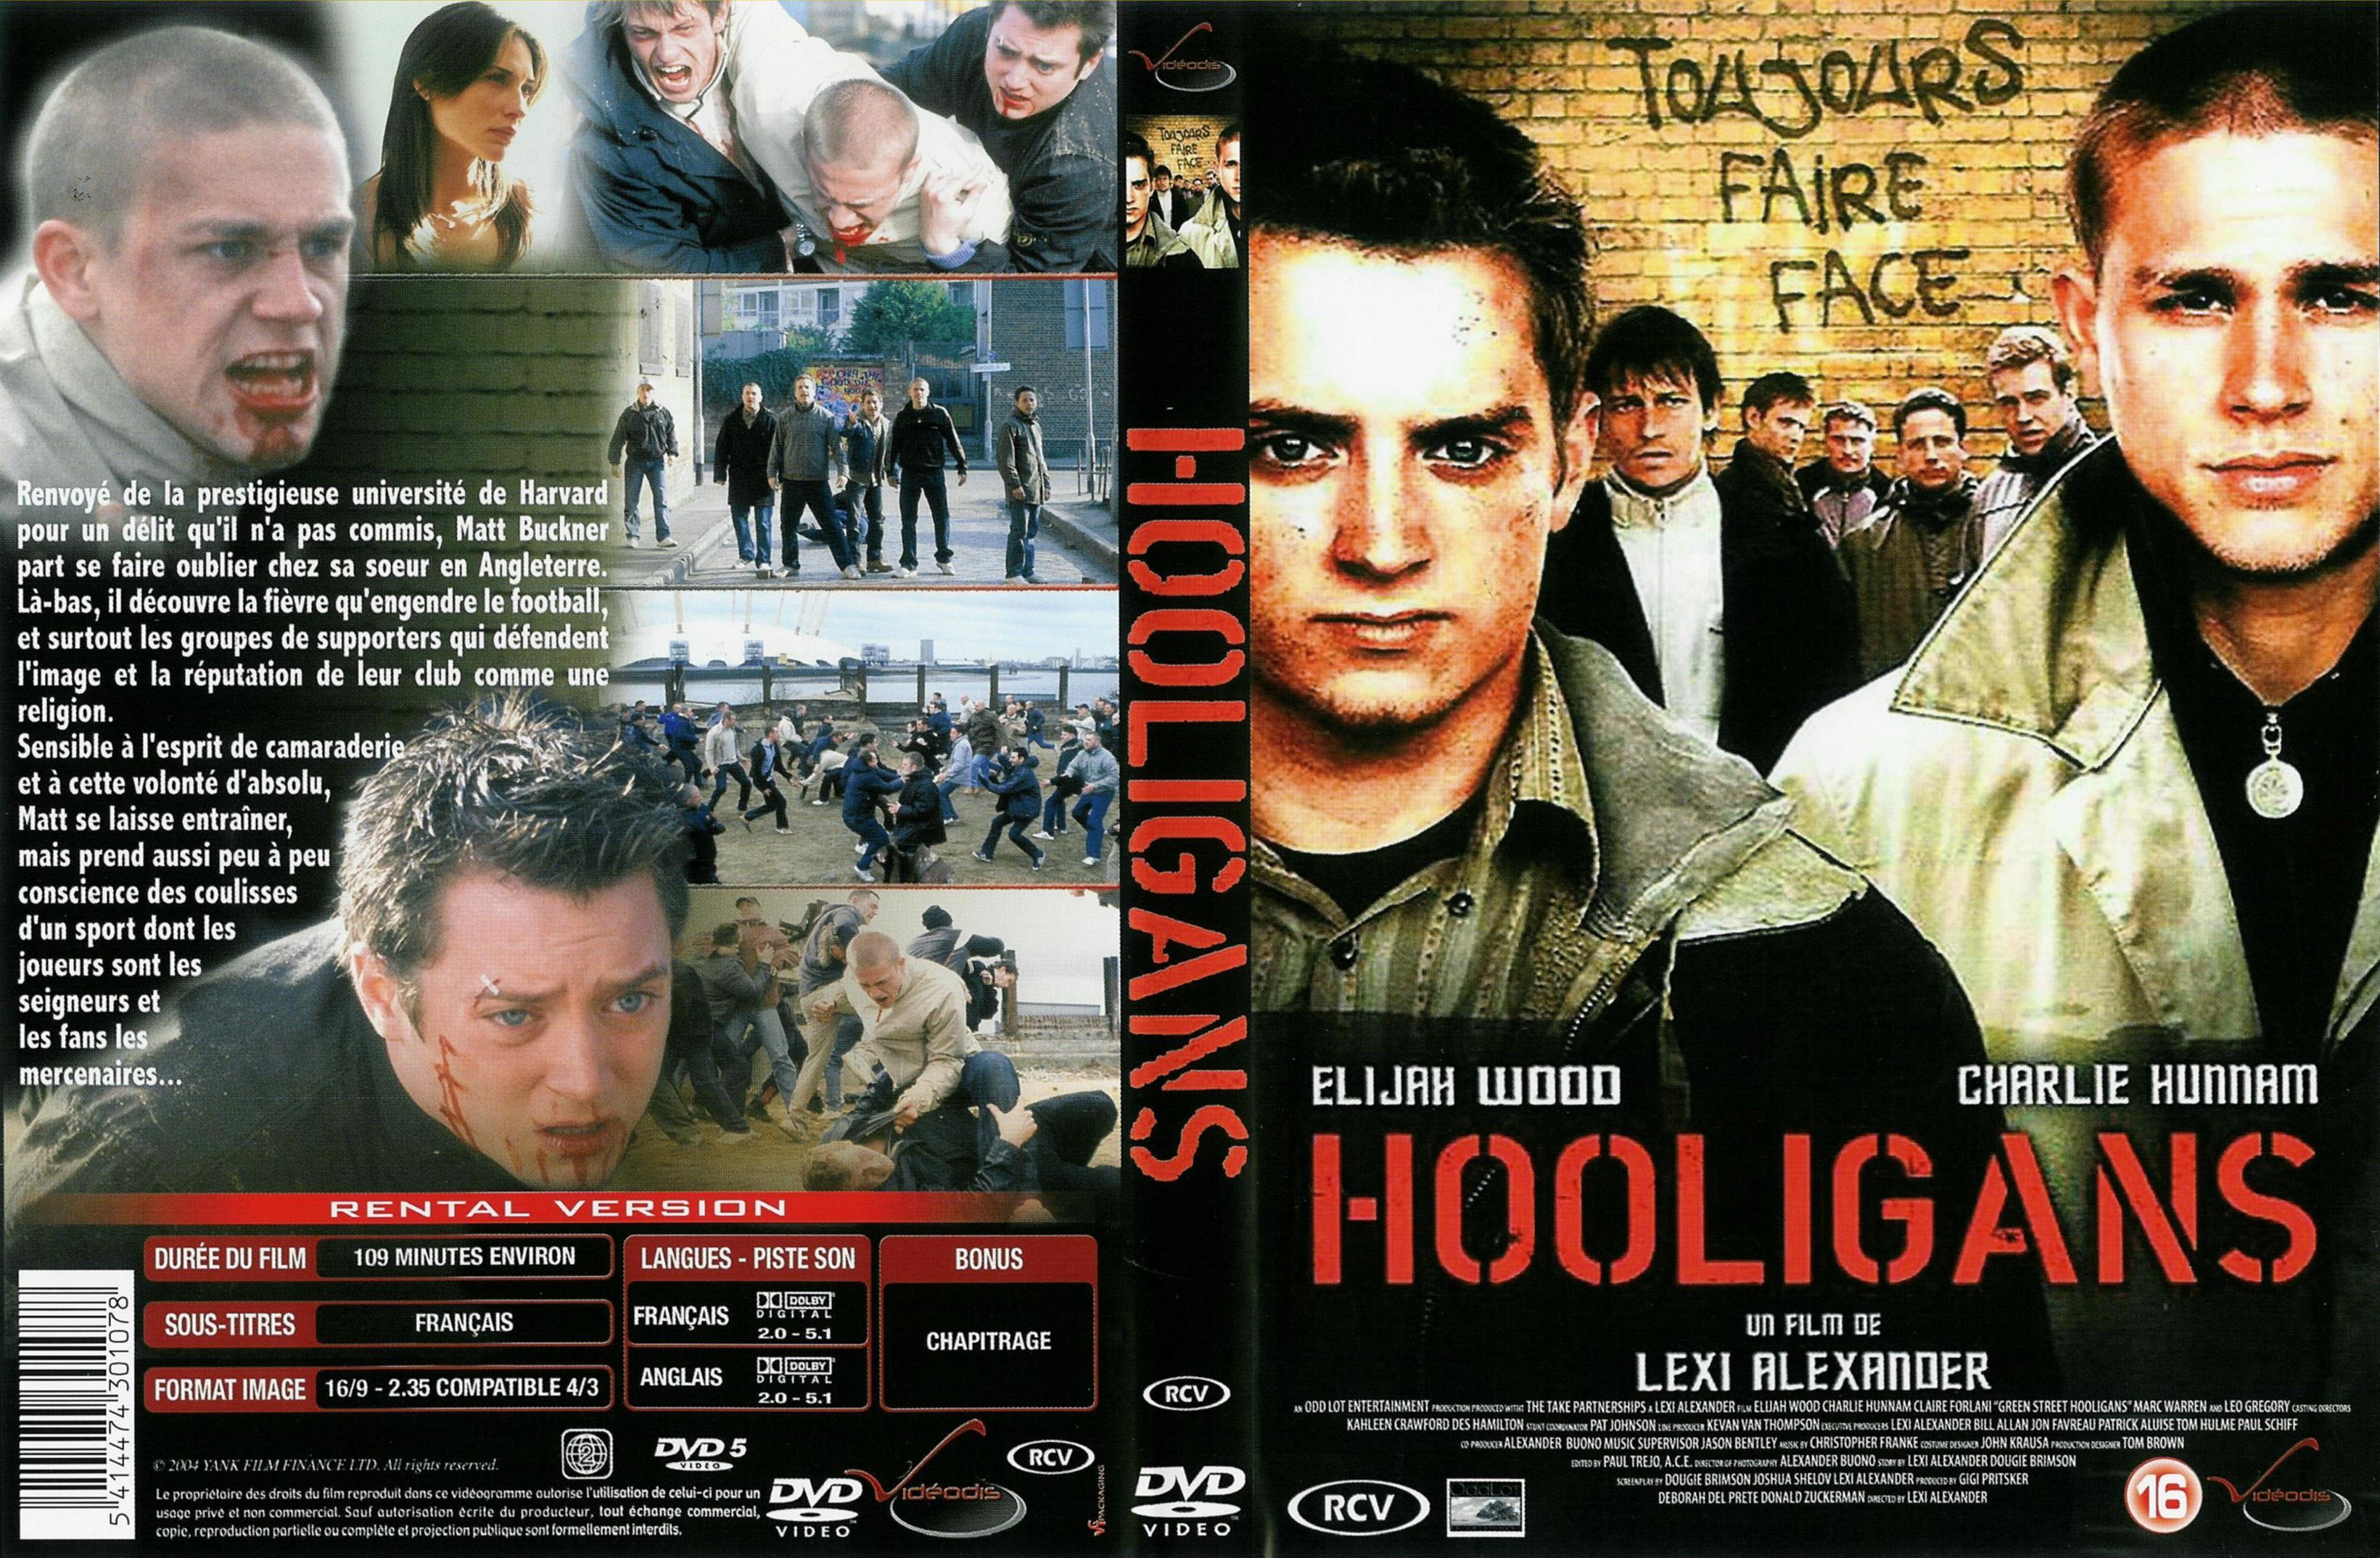 Jaquette DVD Hooligans (Elijah Wood)